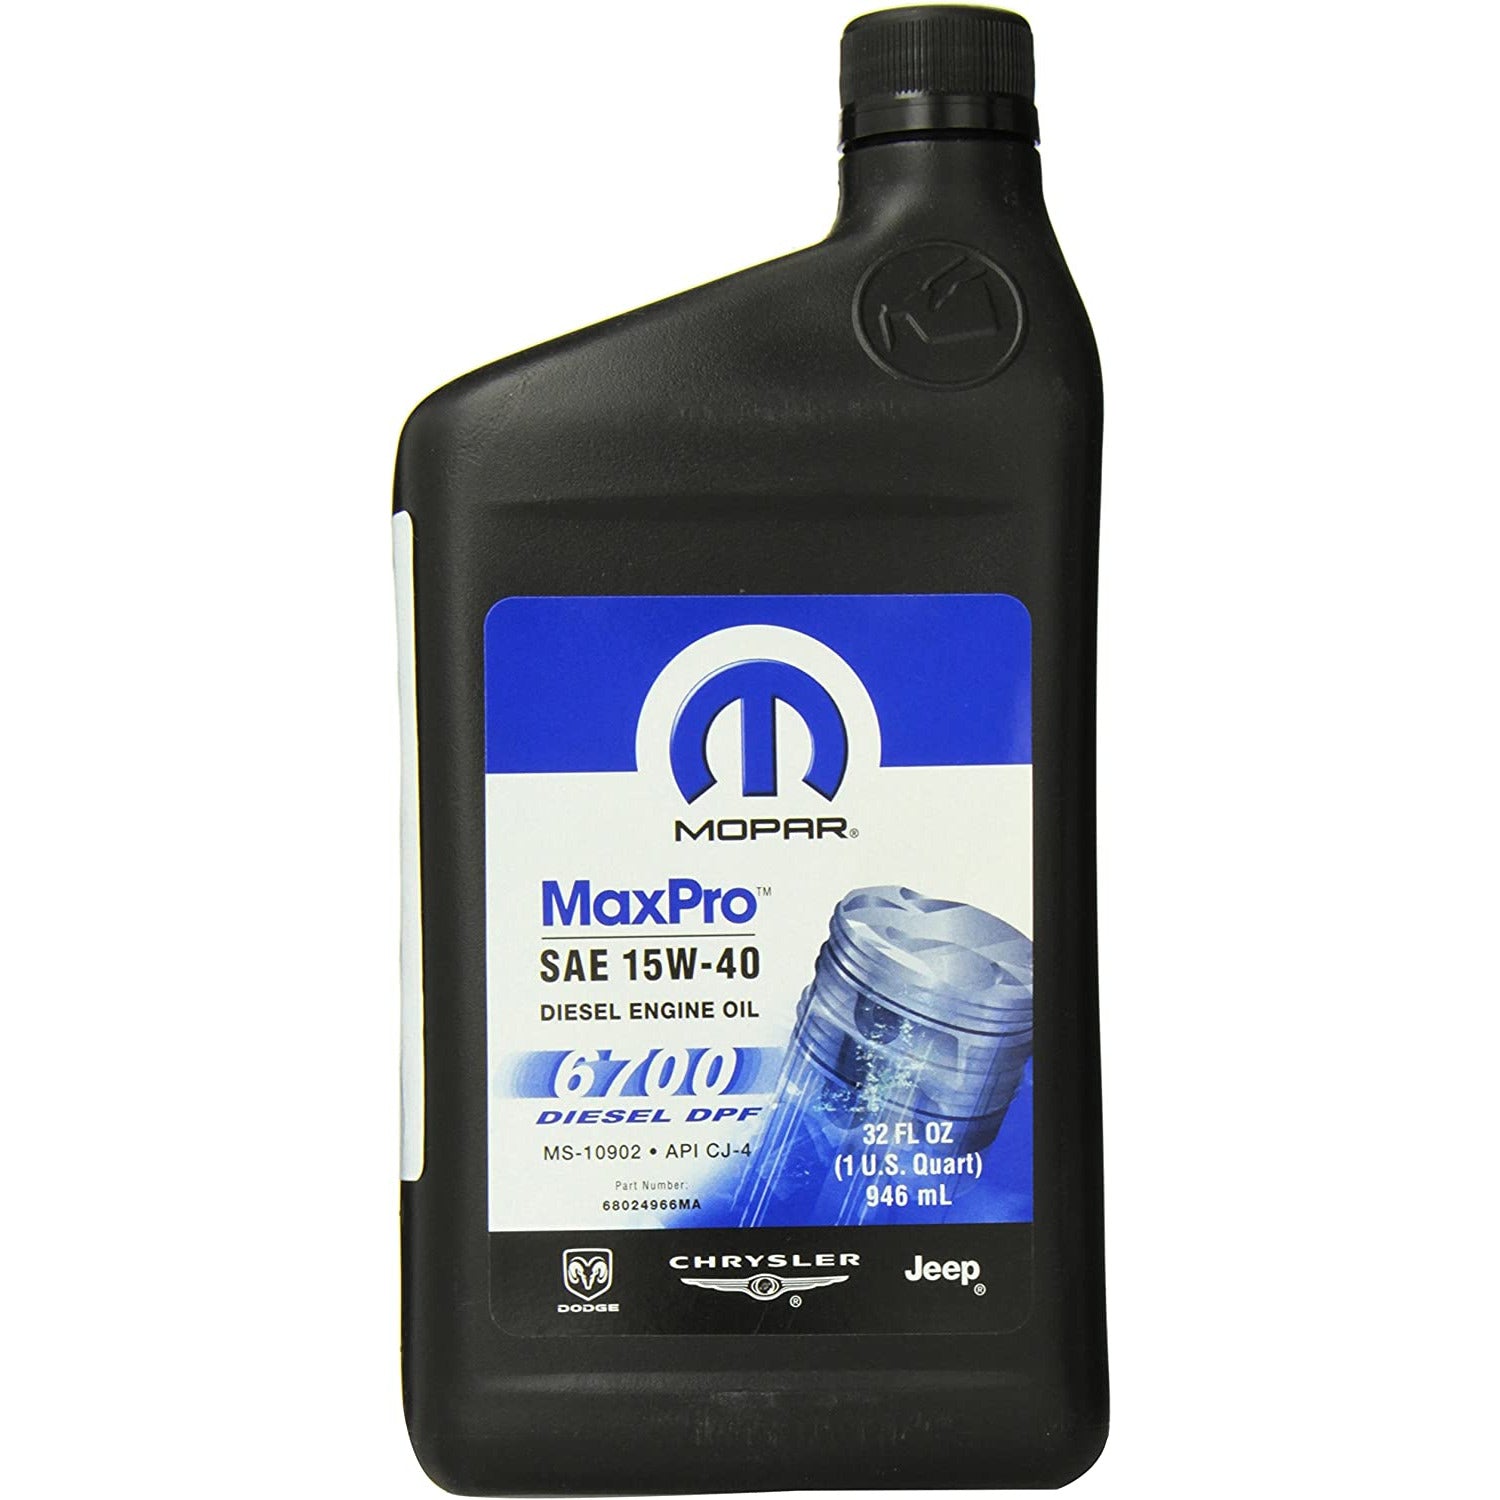 XMP 68024966MA Mopar MaxPro SAE 15W-40 Diesel Engine Oil 6700 (1 qt)